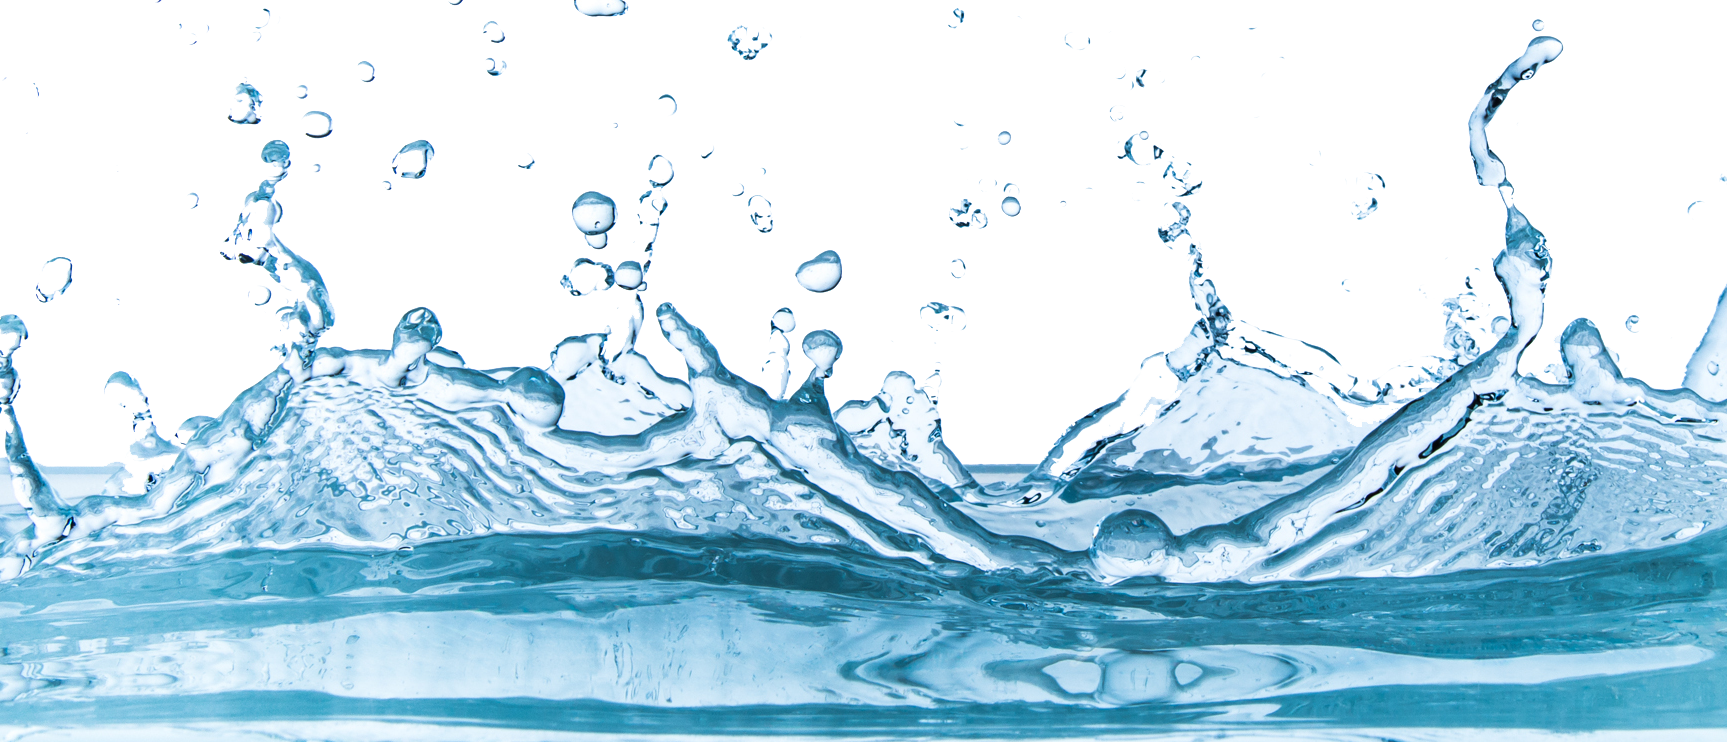 Вода PNG фото, капли и брызги воды скачать PNG фото